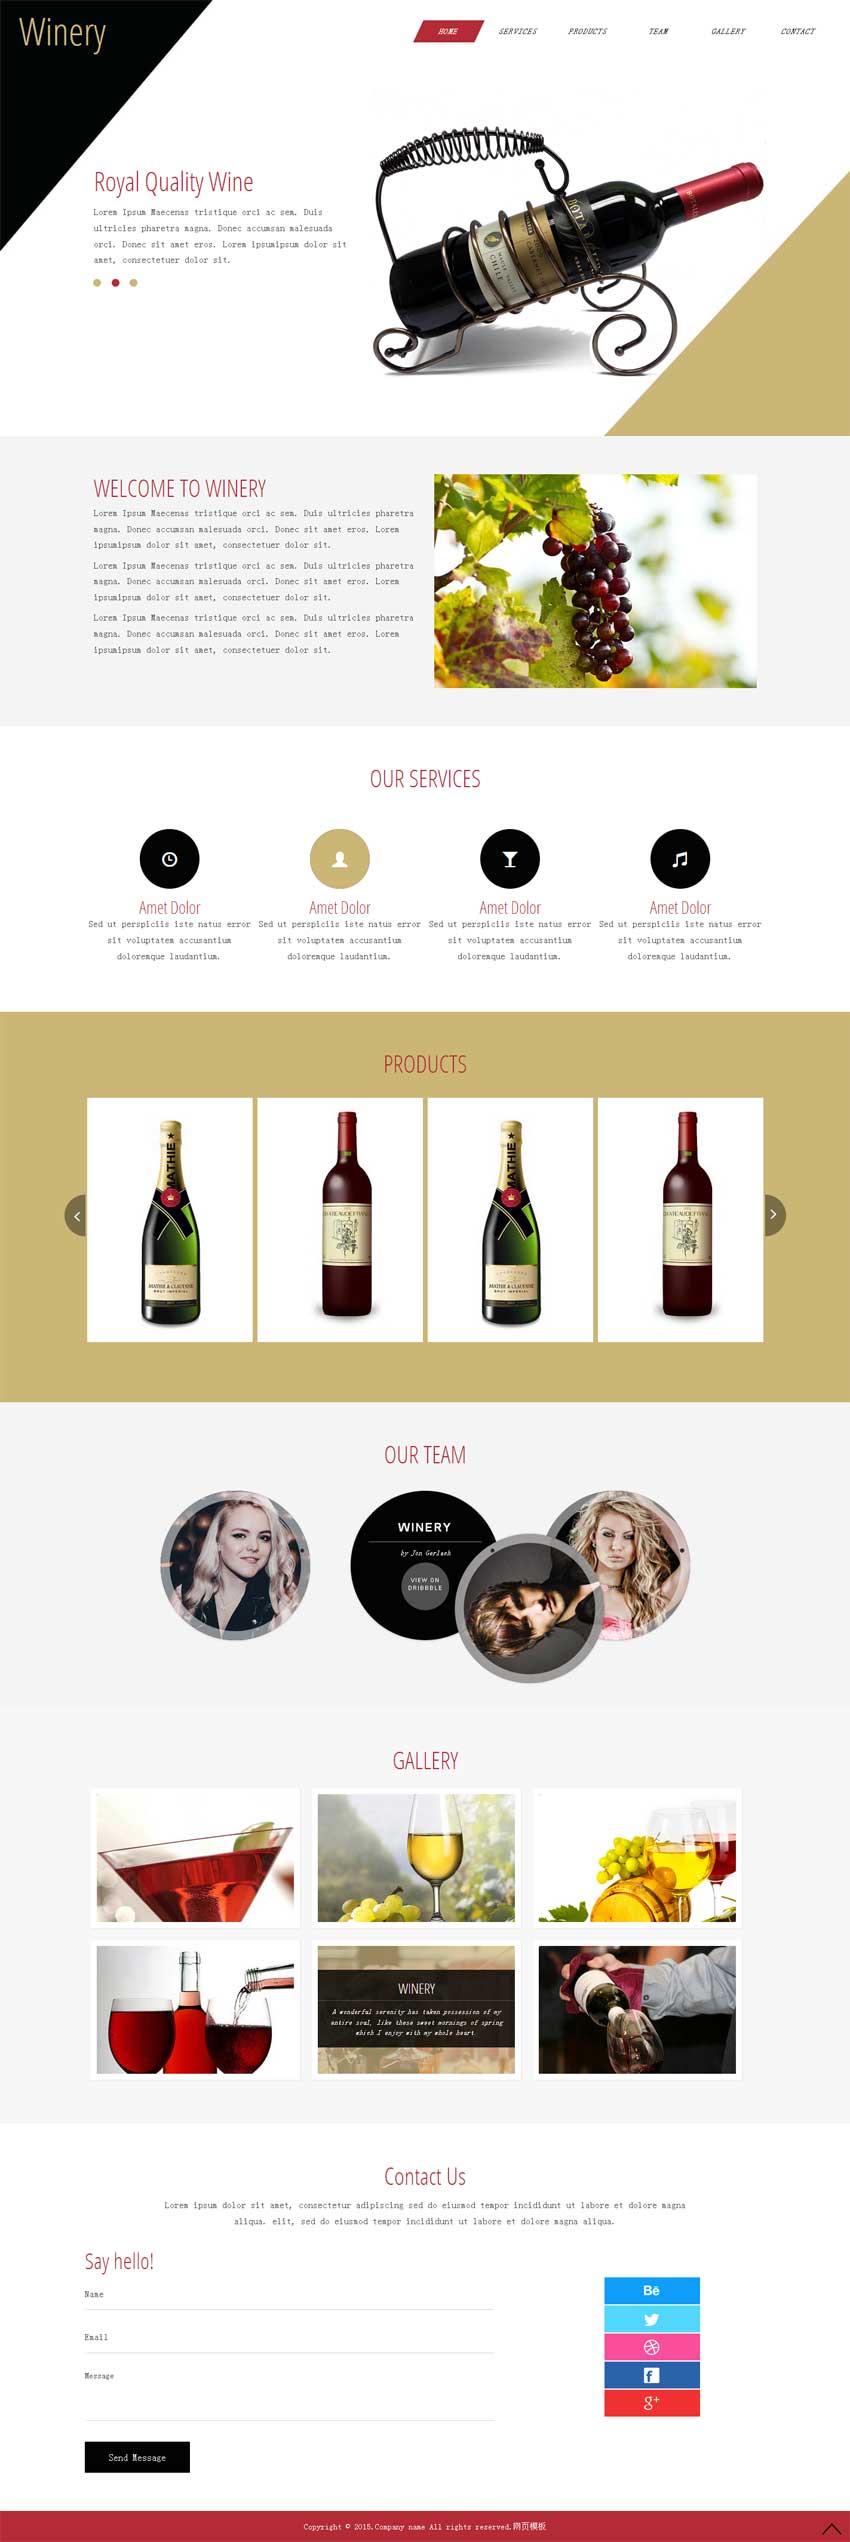 国外高档葡萄酒网站展示单页模板